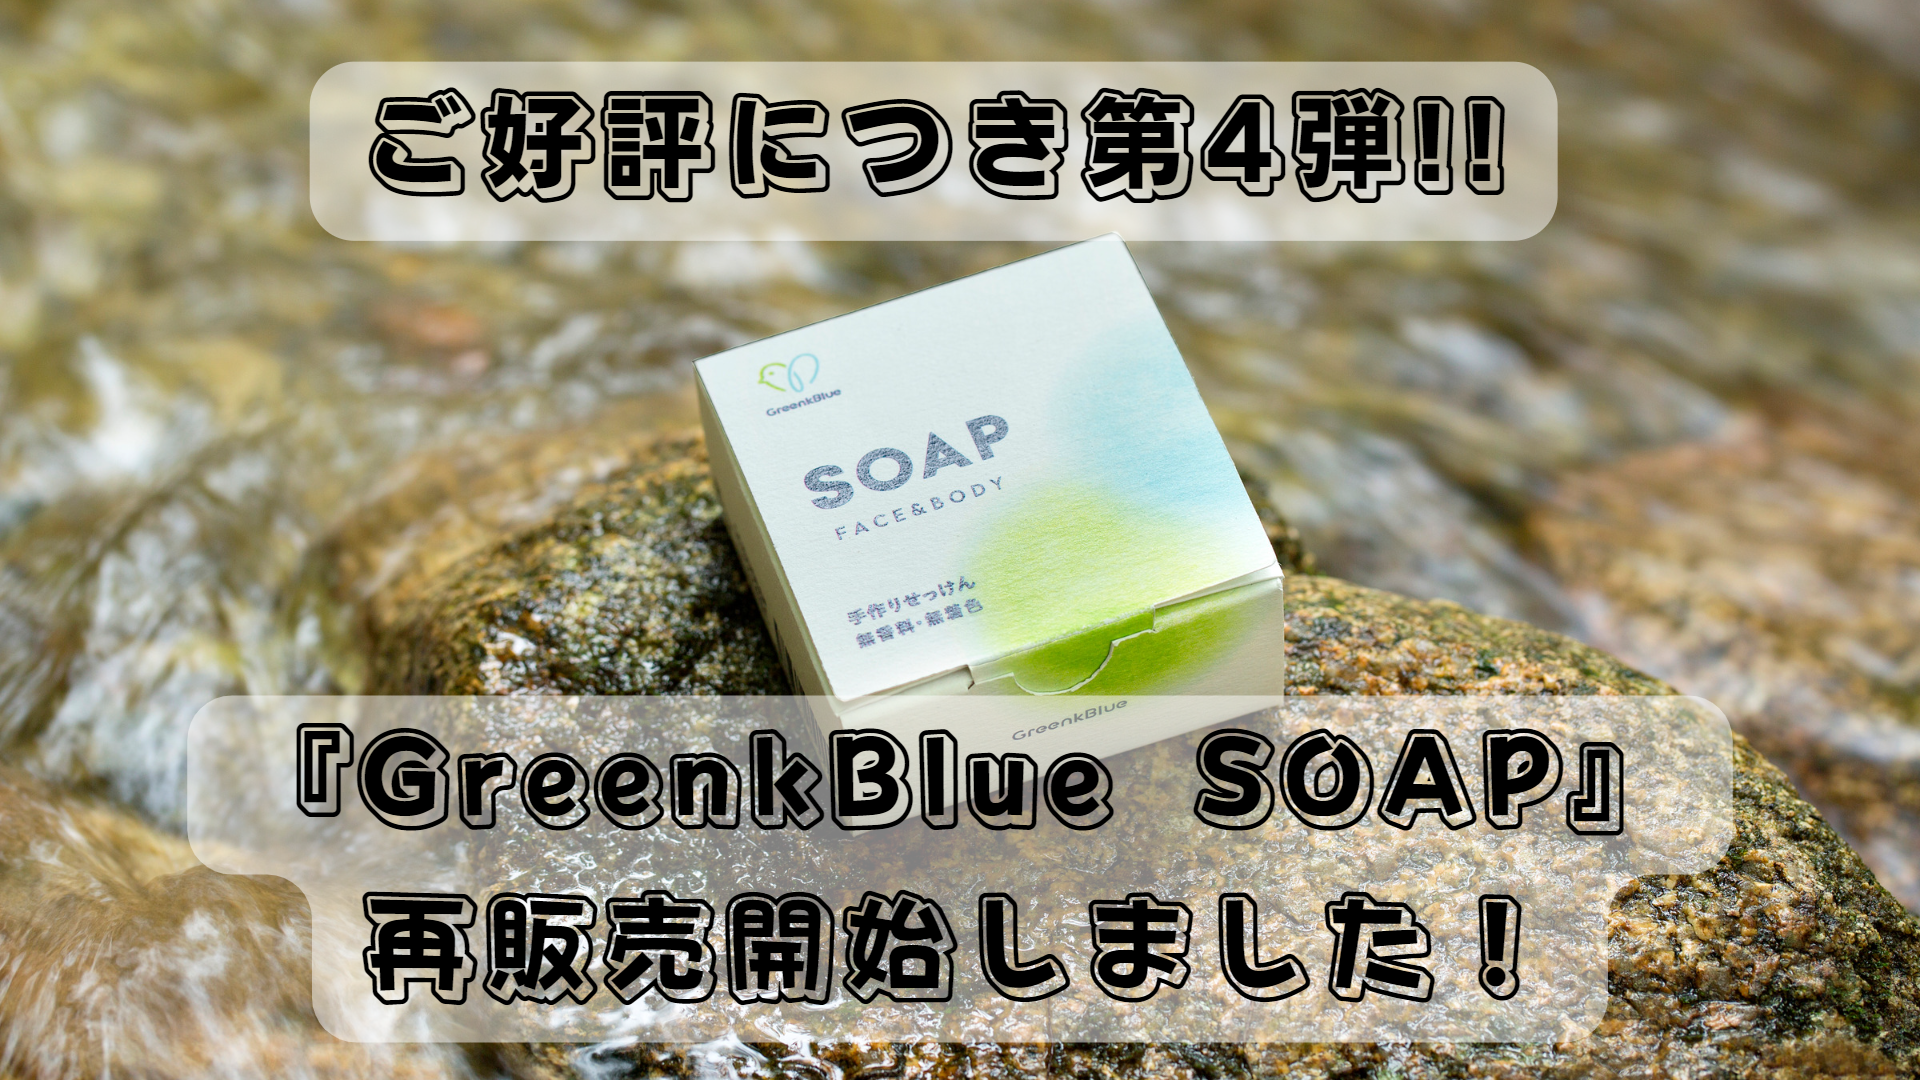 【100個限定販売】10/28(金)より、『GreenkBlue SOAP』再販売開始!!